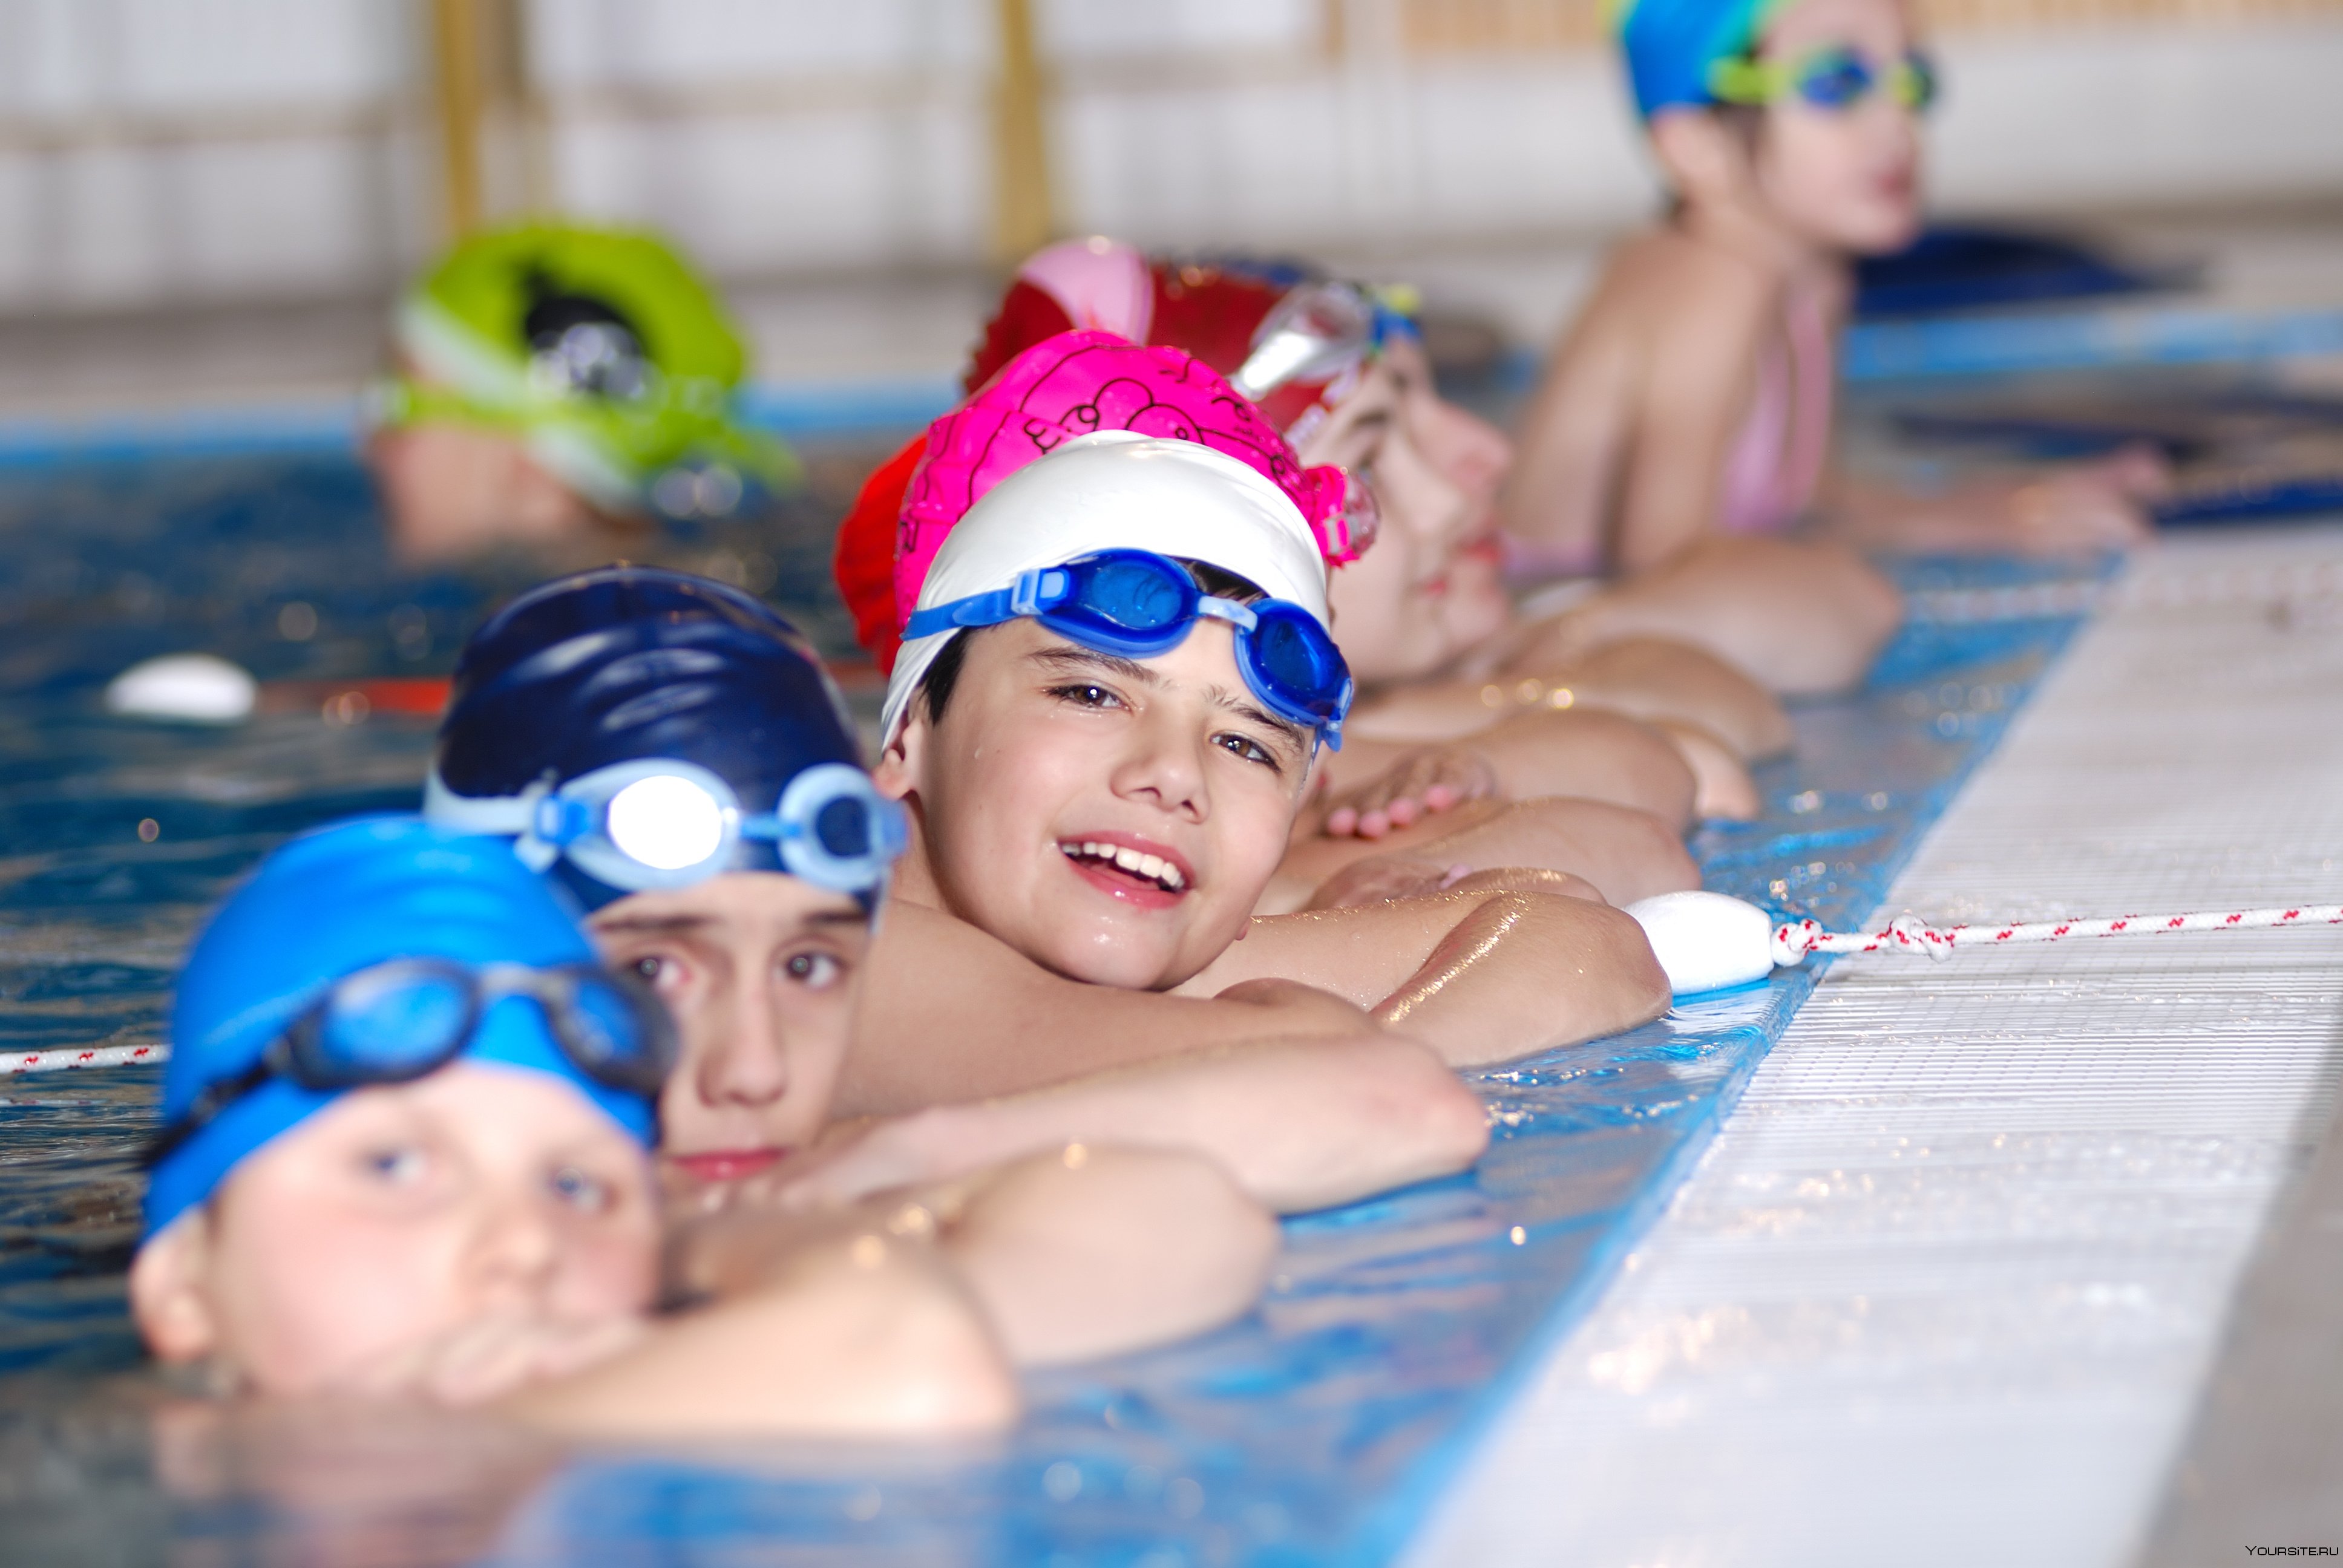 Программа дополнительного профессионального образования Методика обучения плаванию детей дошкольного и школьного возраста, тренирующихся на начальном этапе обучения